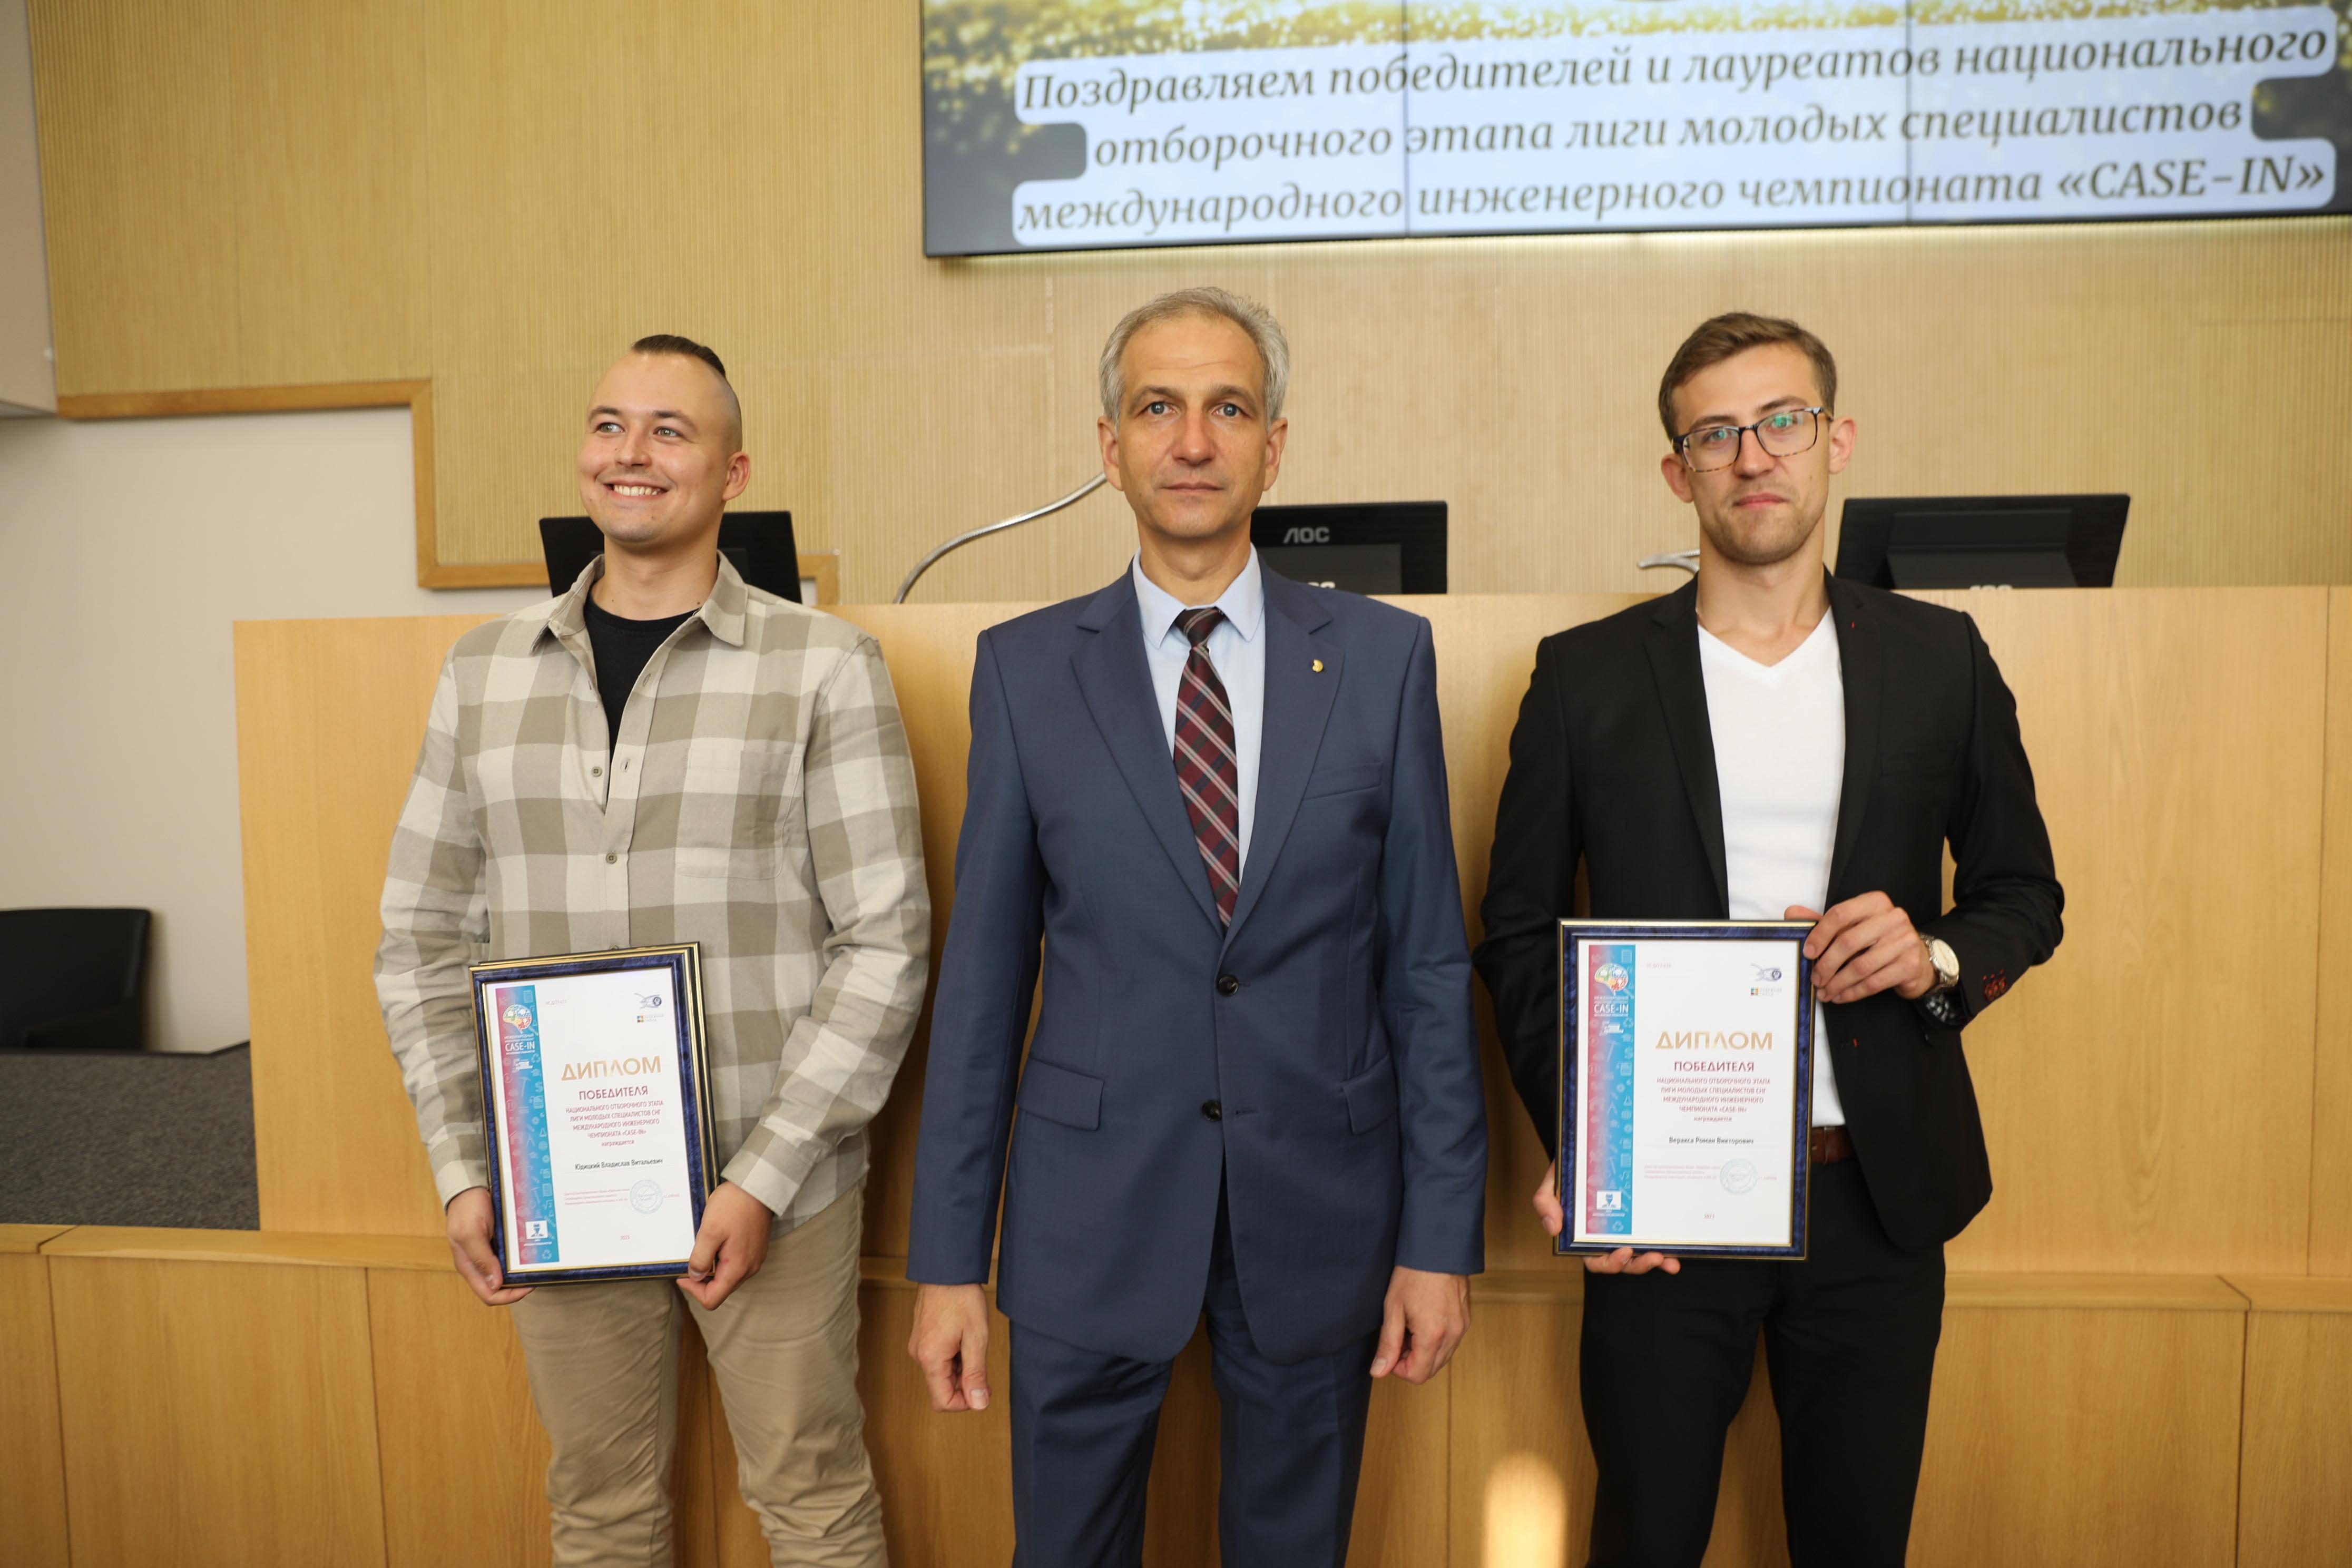 Роман Веракса и Владислав Юдицкий получили дипломы победителей национального отбора Лиги молодых специалистов СНГ Международного инженерного чемпионата Case-IN